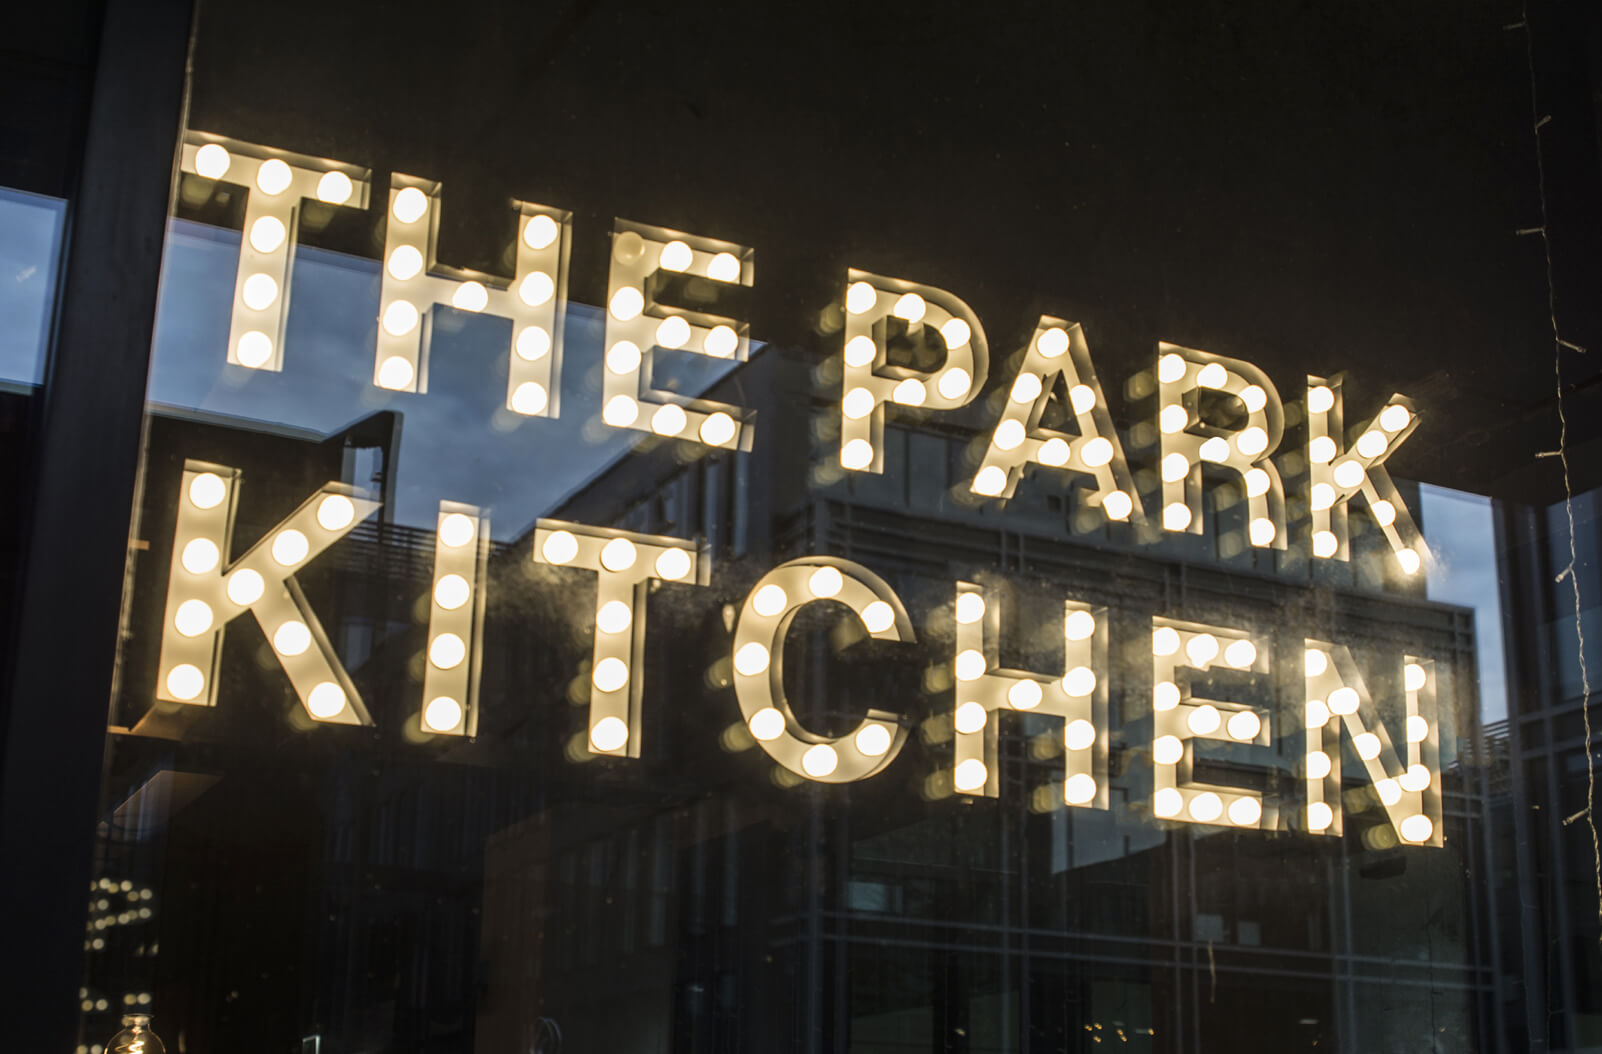 The Park Kitchen - The Park Kitchen - małe litery z żarówkami umieszczone za szybą